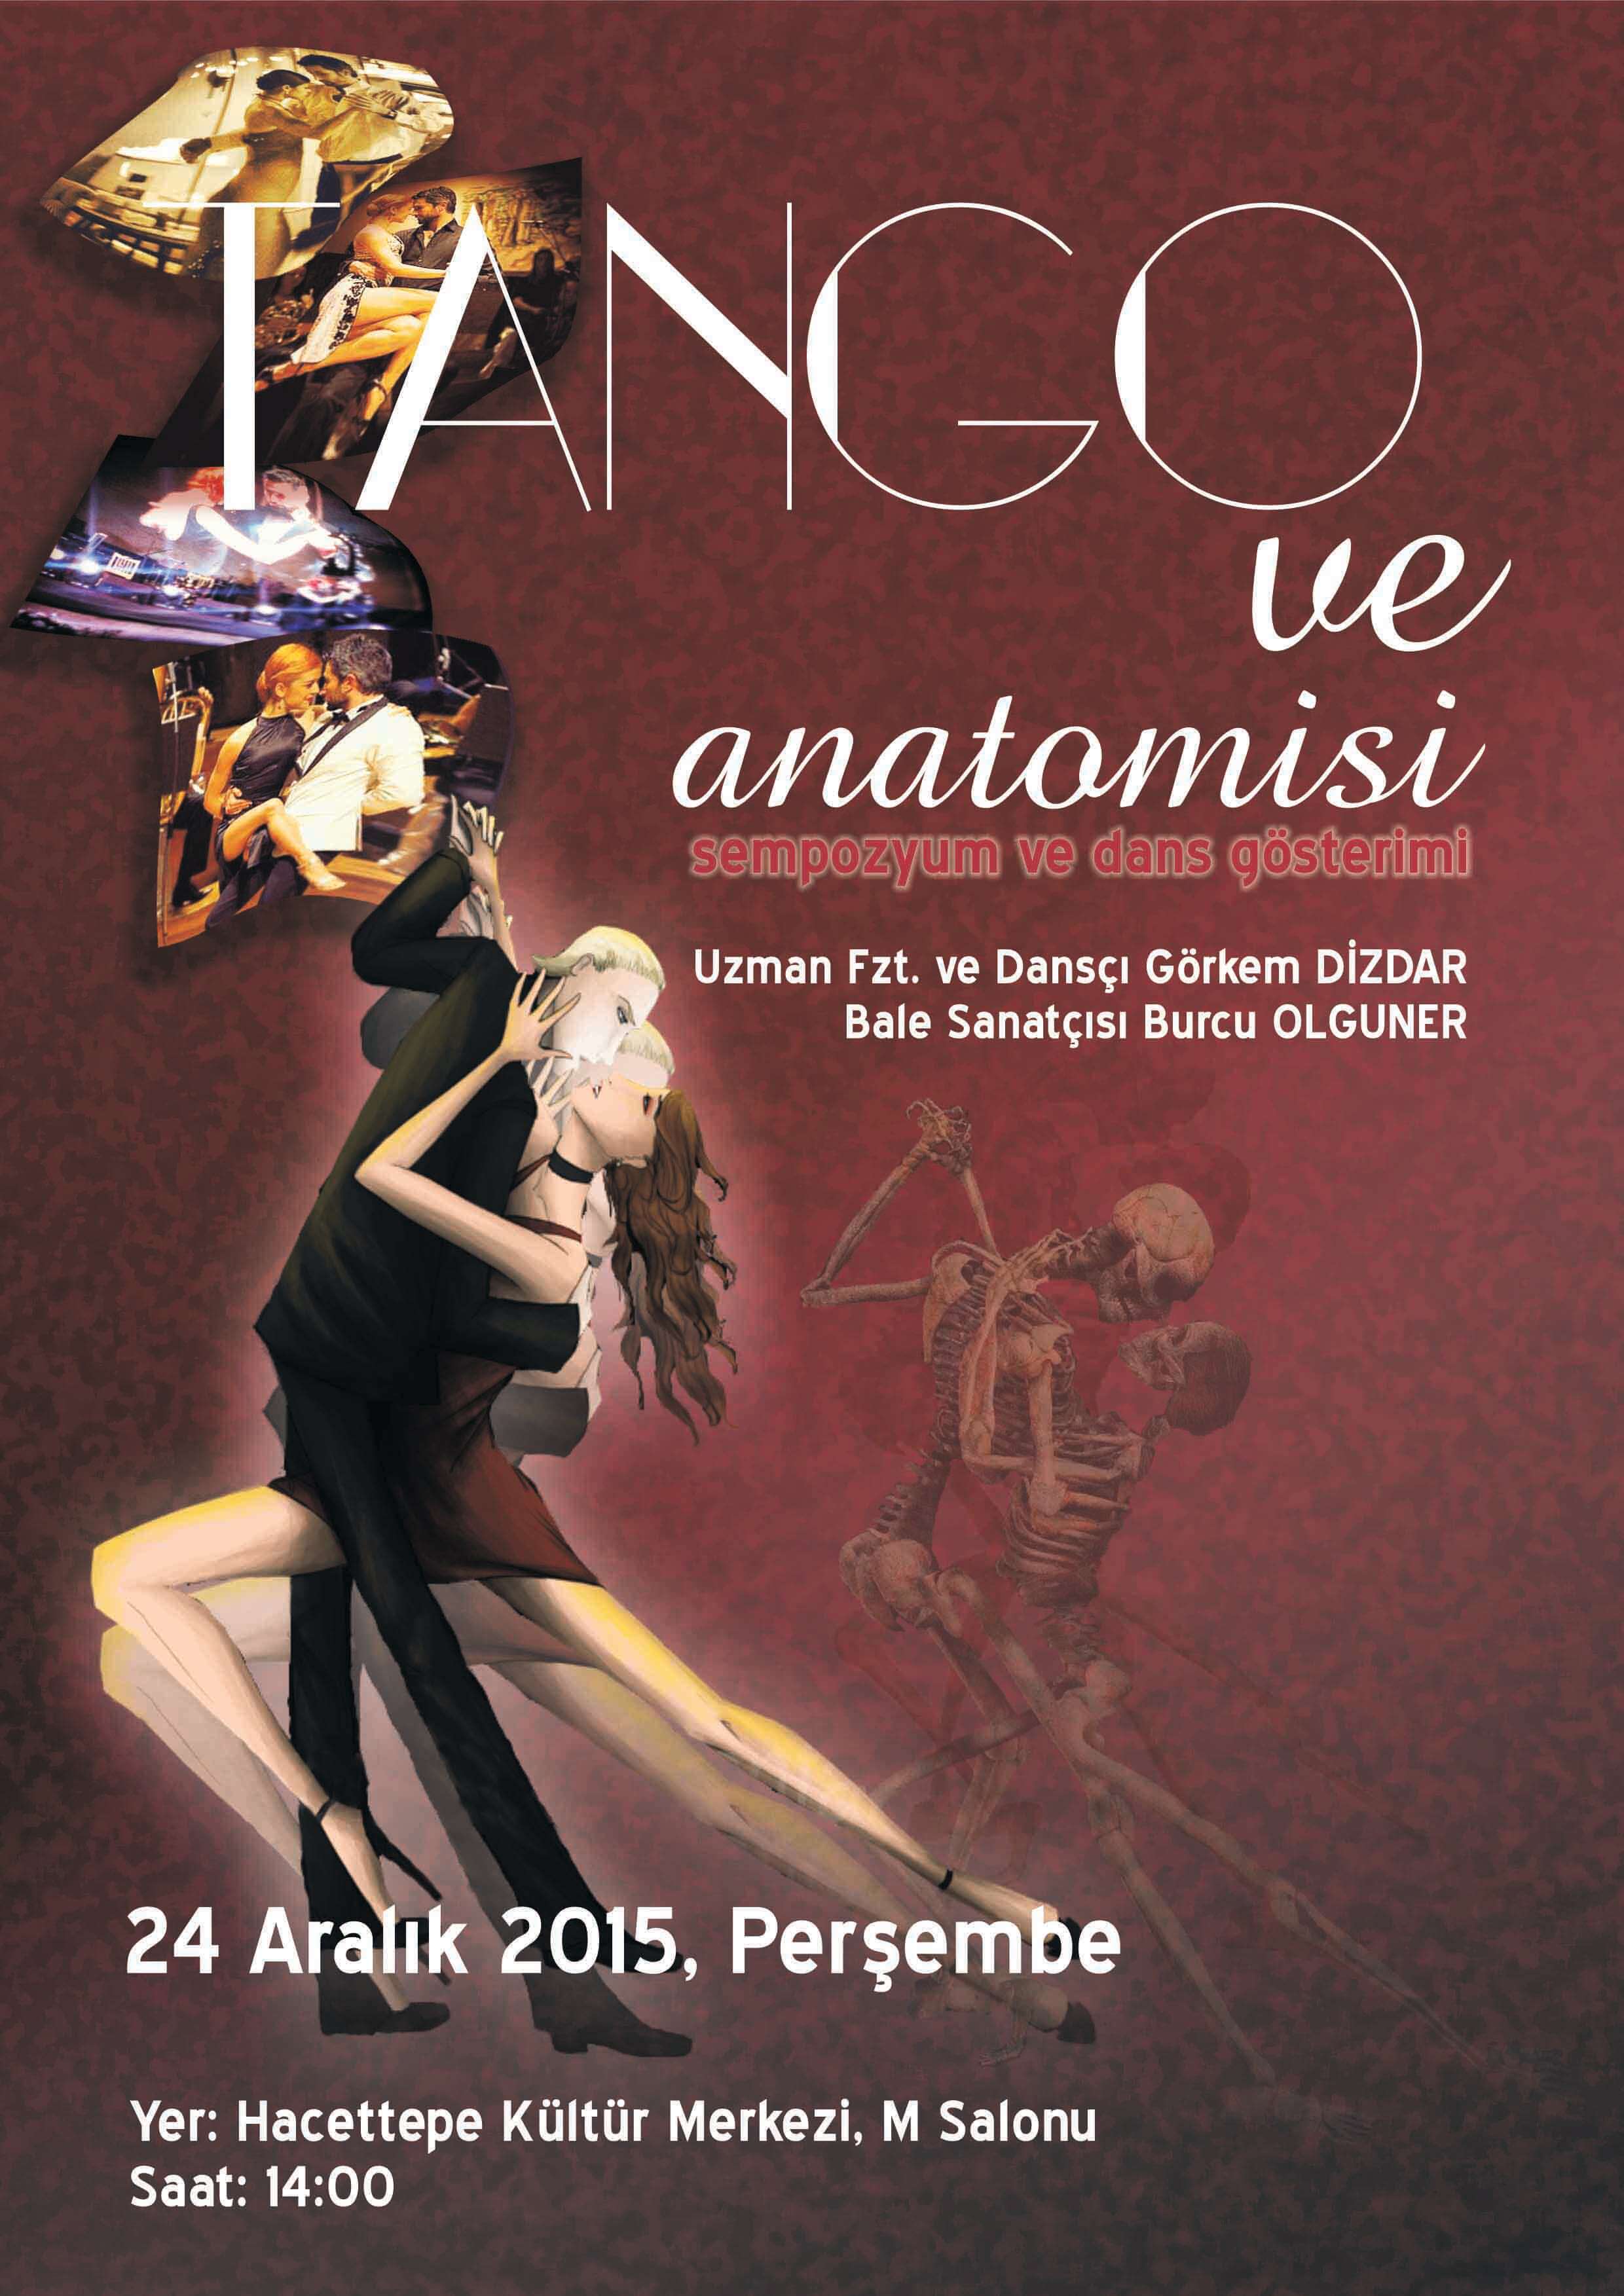 Tango ve Anatomisi - Sempozyum ve Dans Gösterimi 